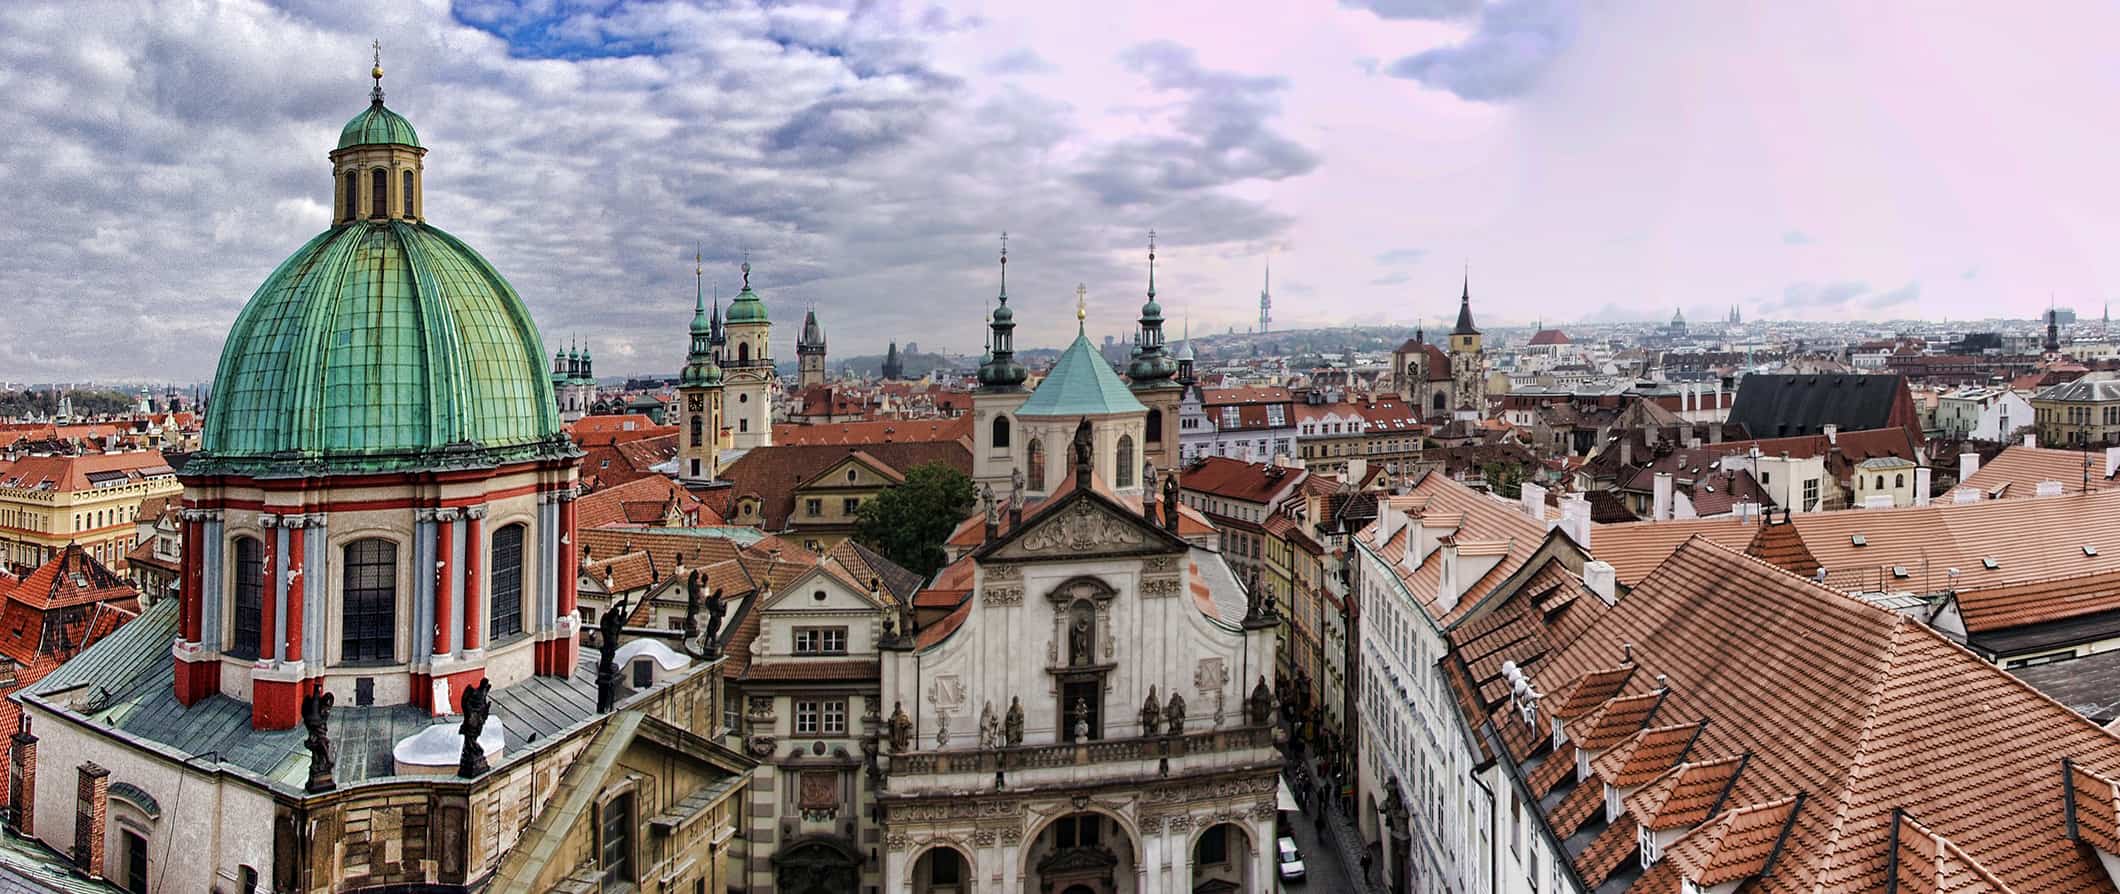 穷游欧洲:布拉格城